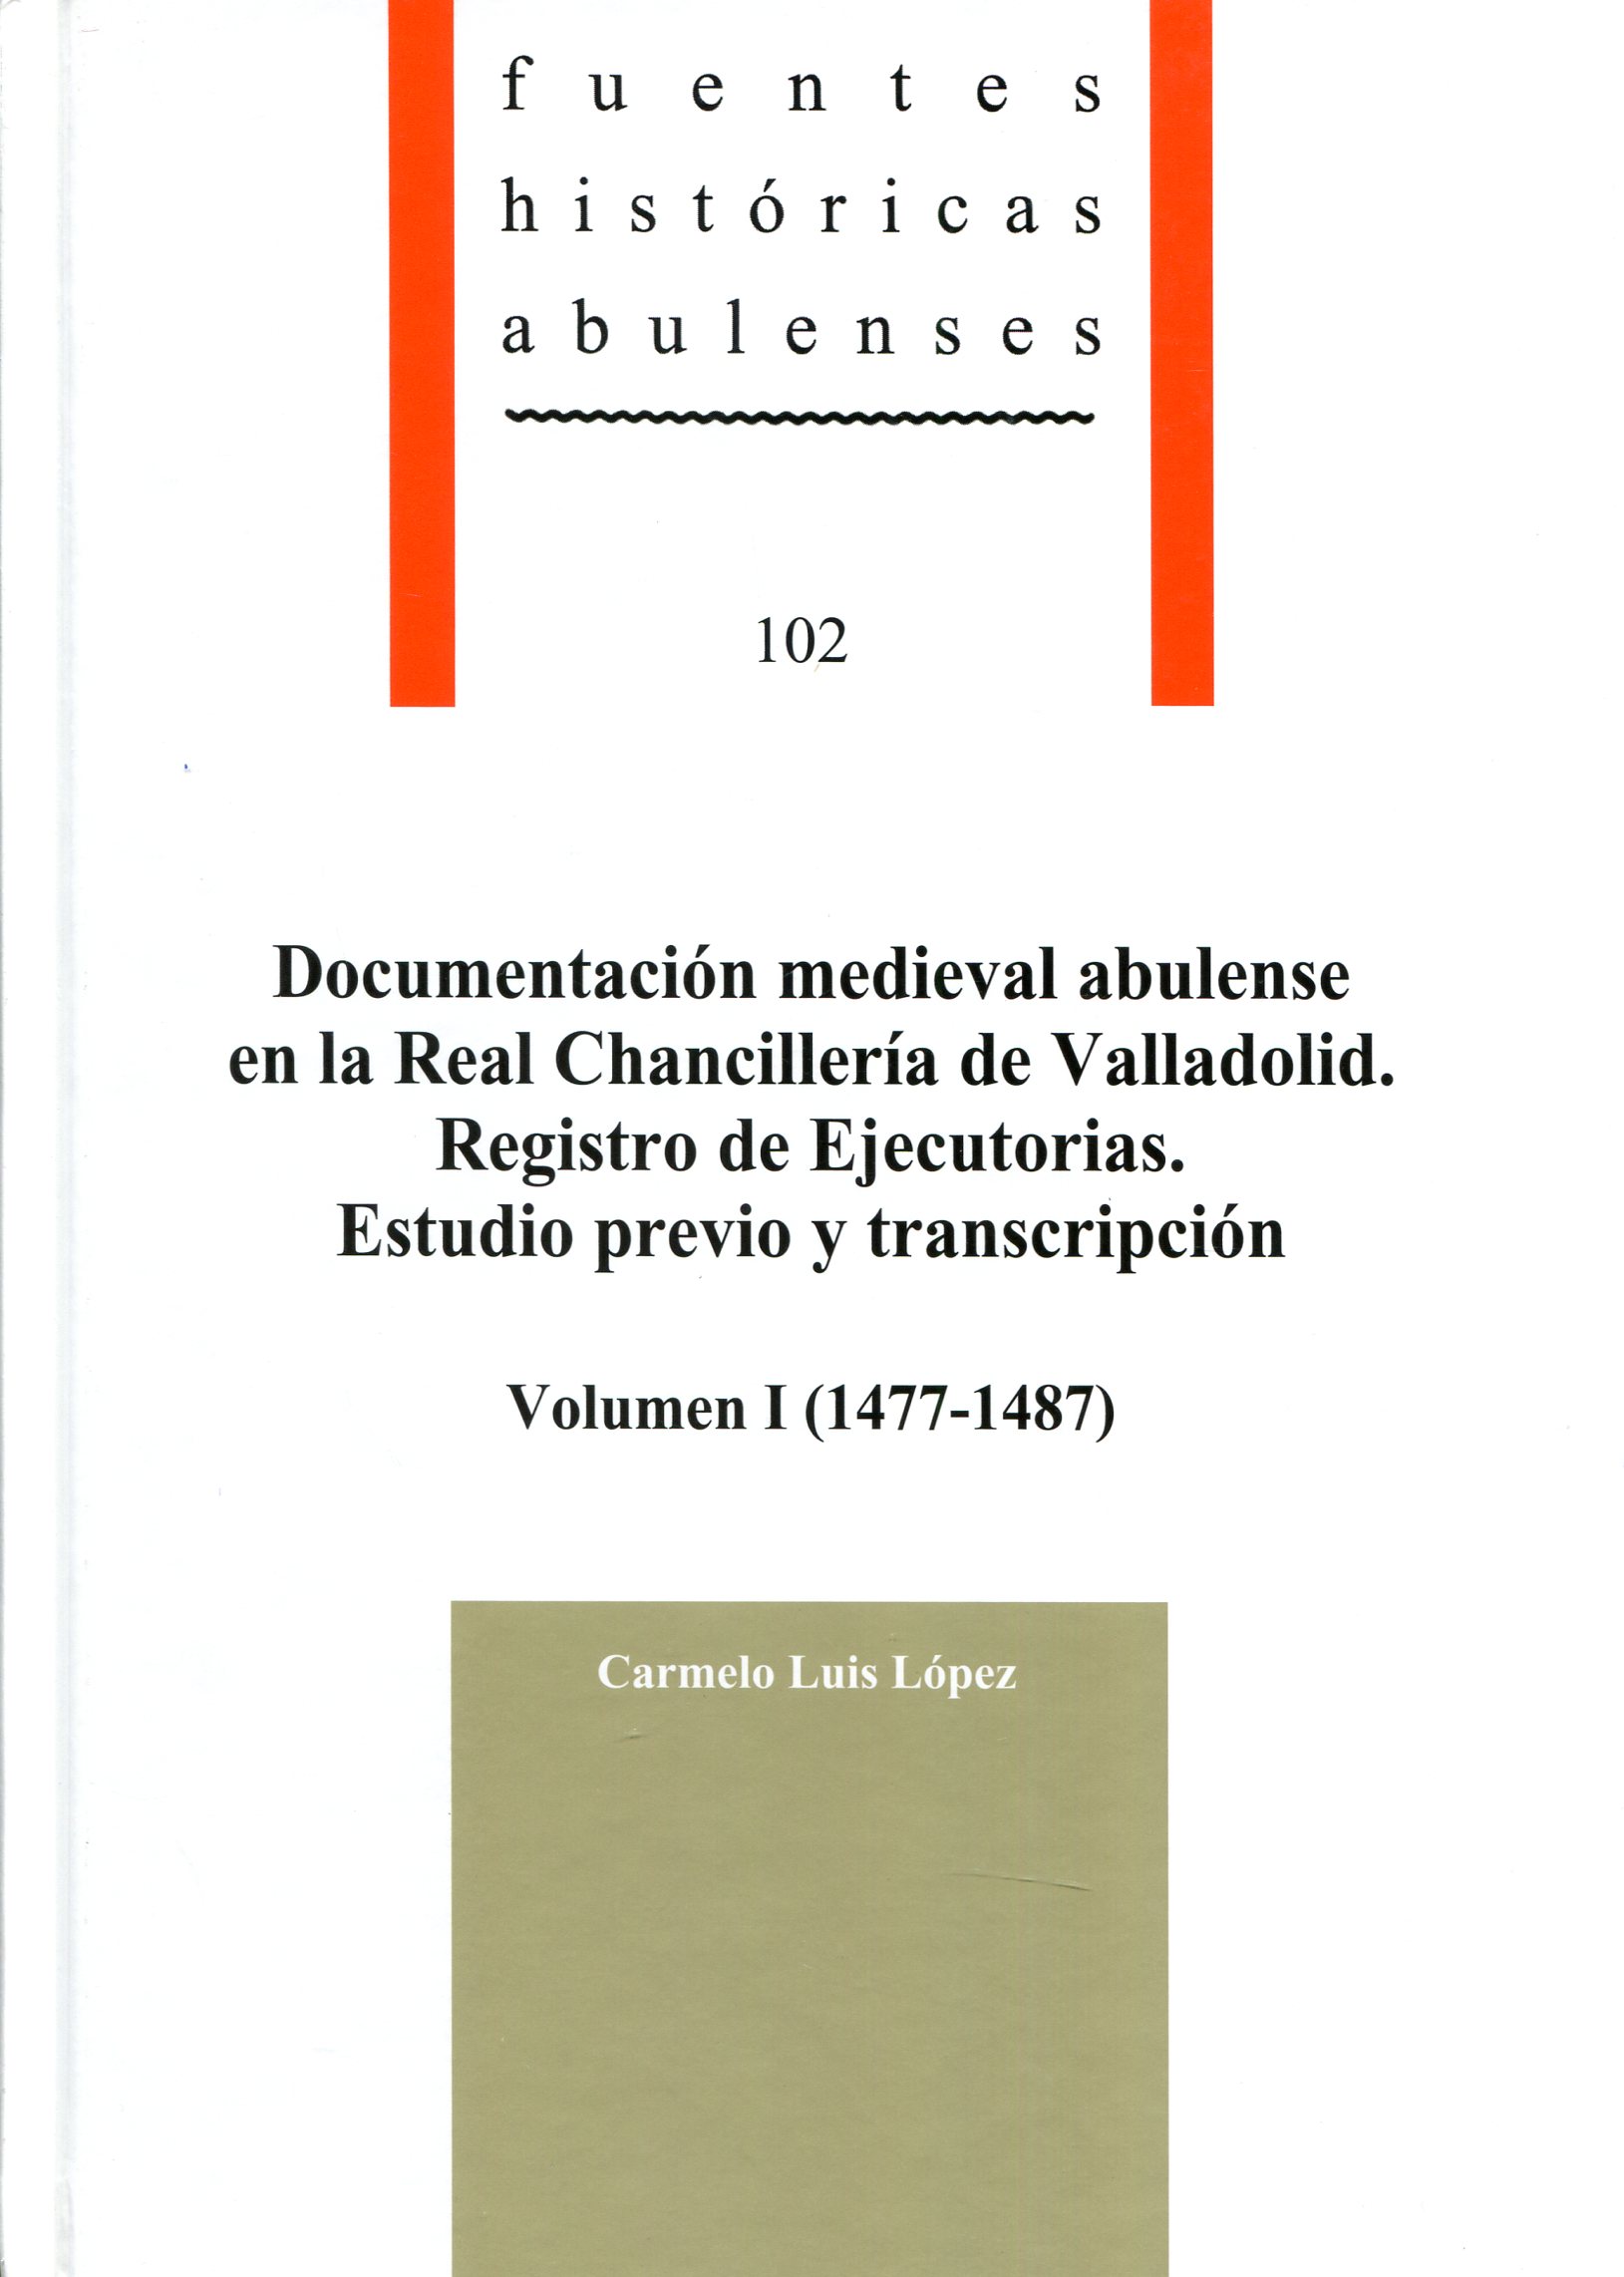 Documentación medieval abulense en la Real Chancillería de Valladolid